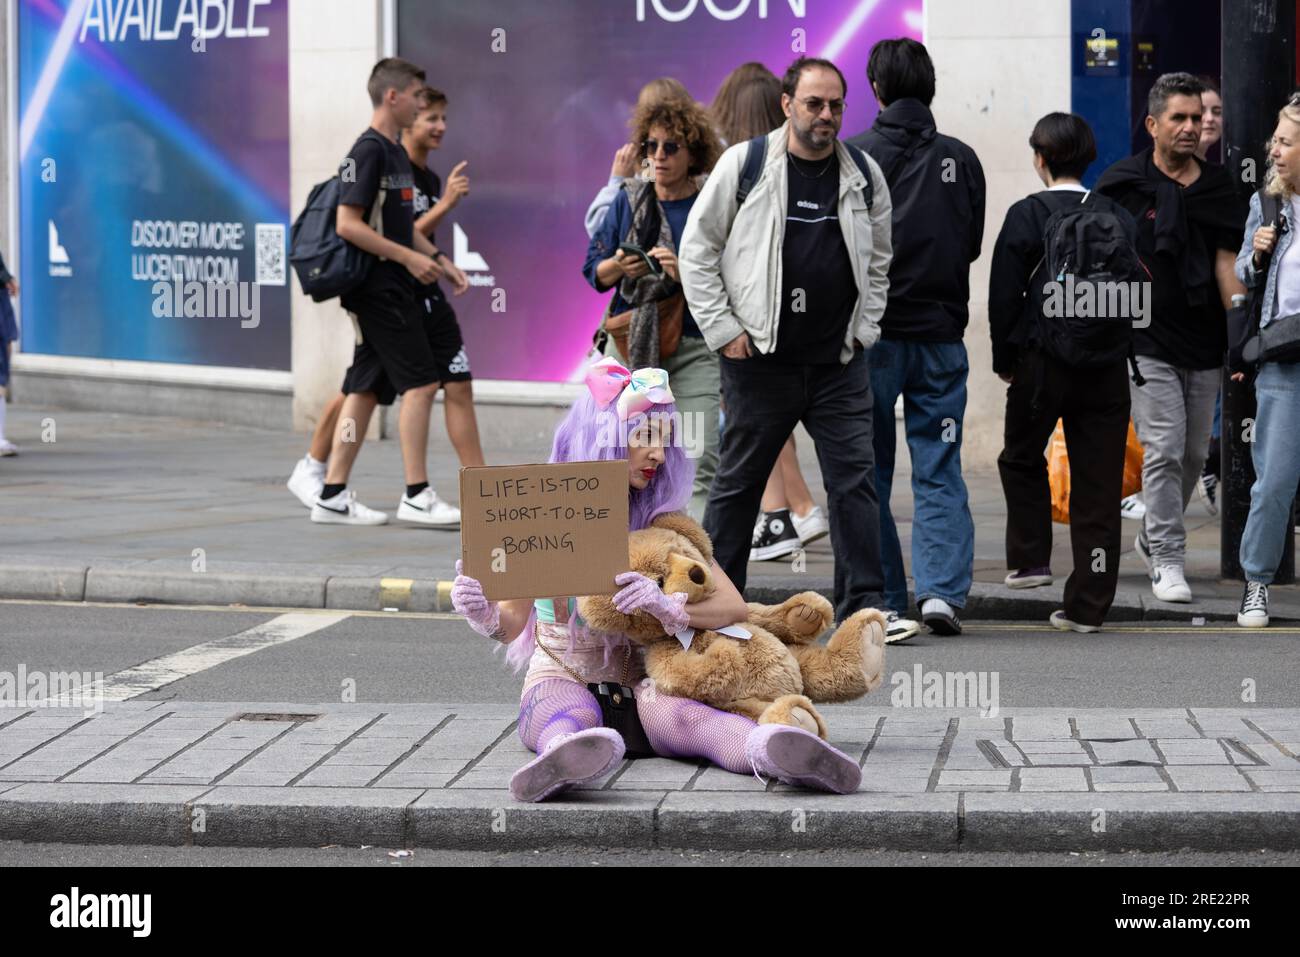 Frau saß auf der Shaftesbury Avenue und hielt ein Plakat mit der Aufschrift "Life is too short to be langweilig", Londons West End, England, Großbritannien Stockfoto